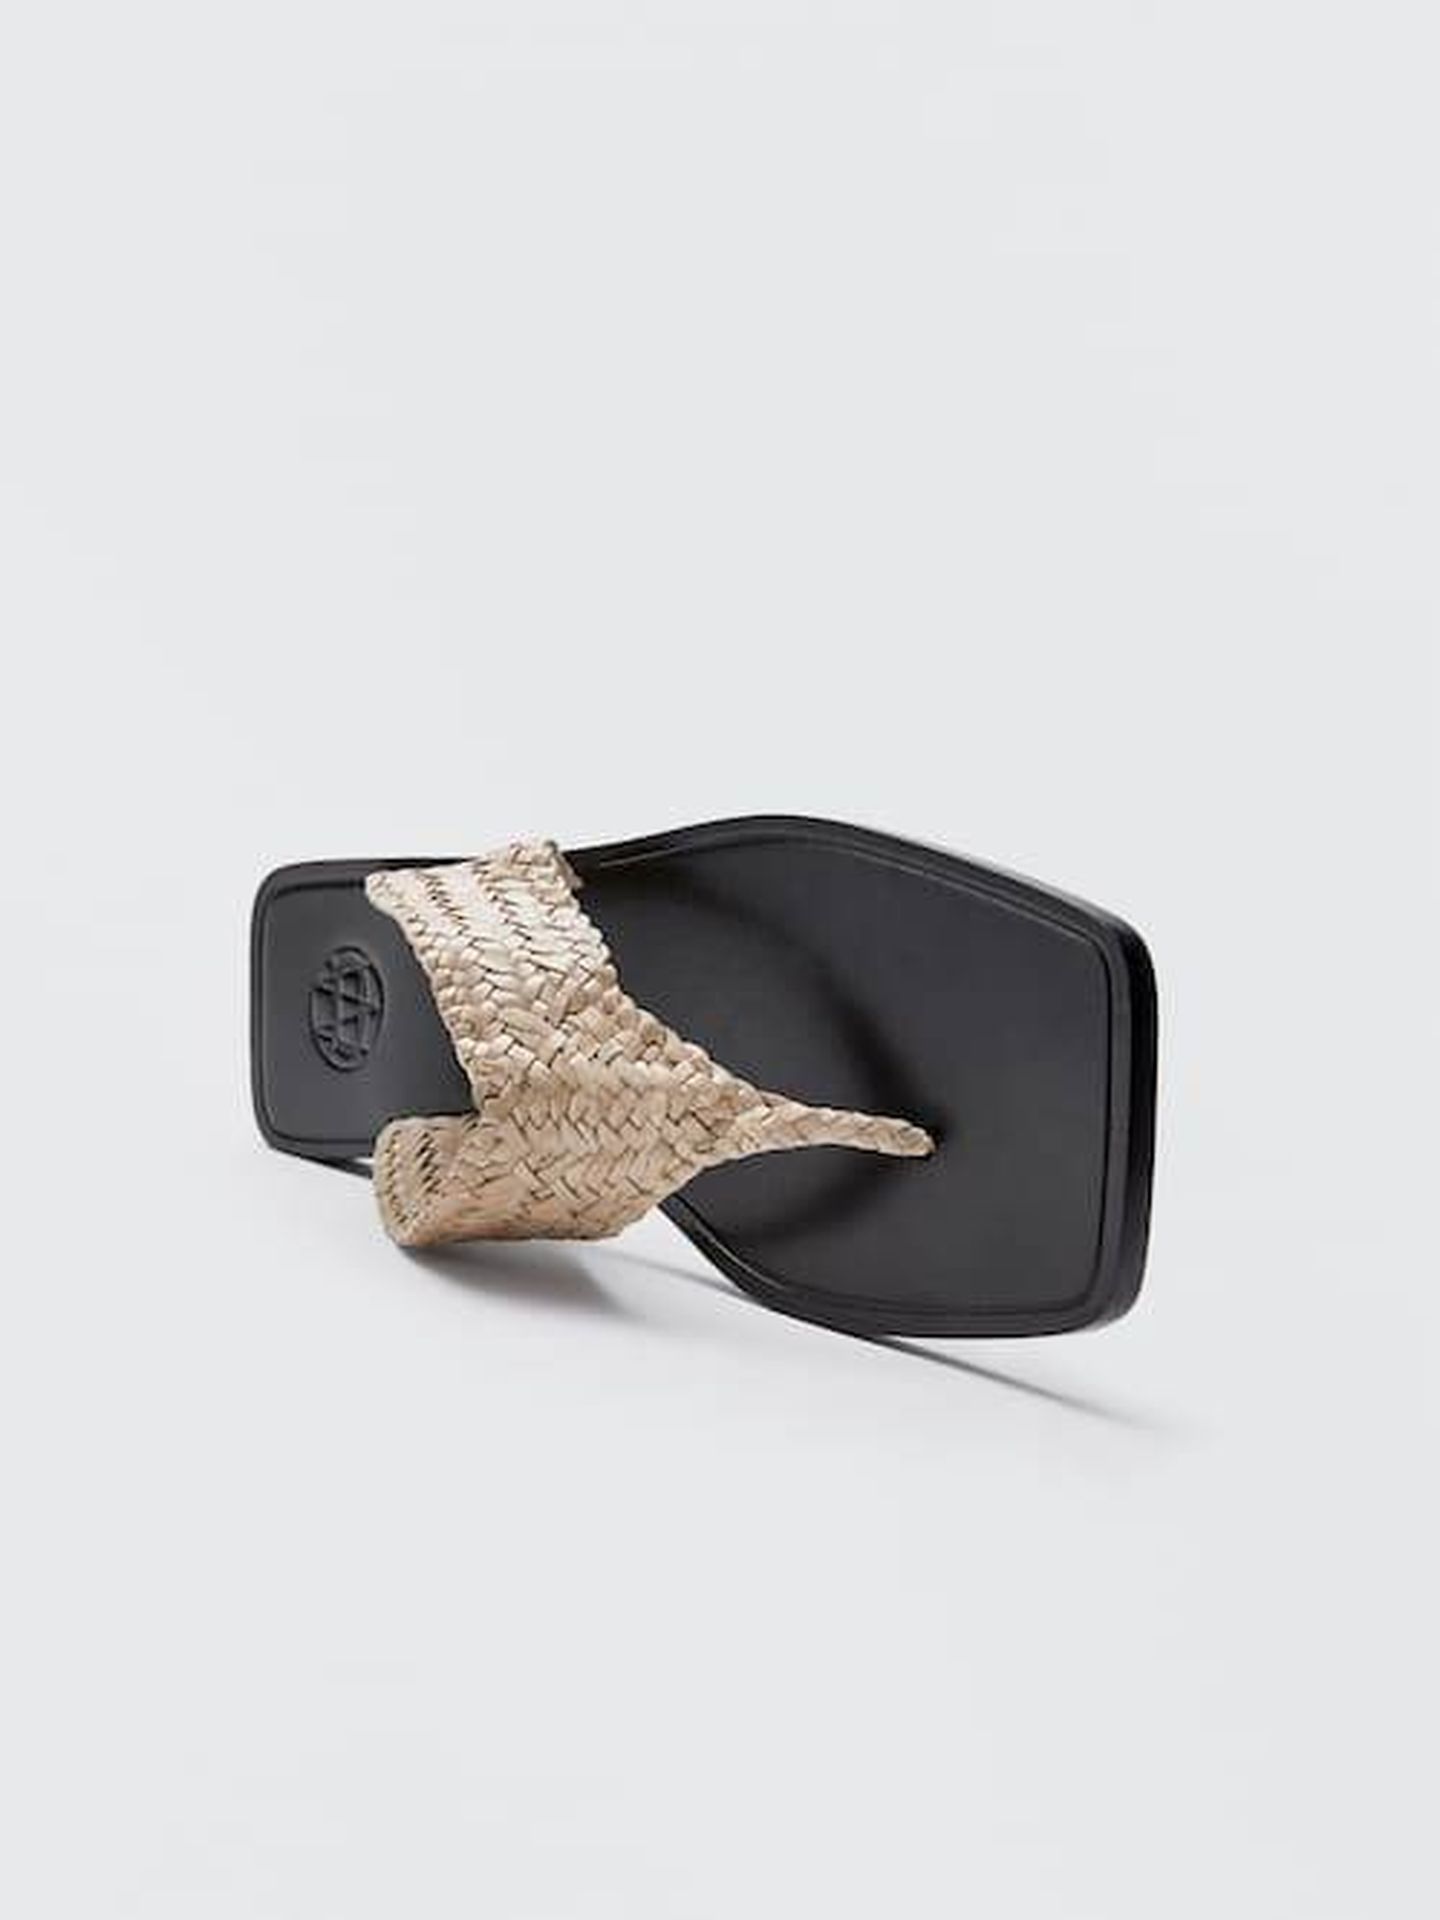 Las sandalias de dedo de Massimo Dutti. (Cortesía)